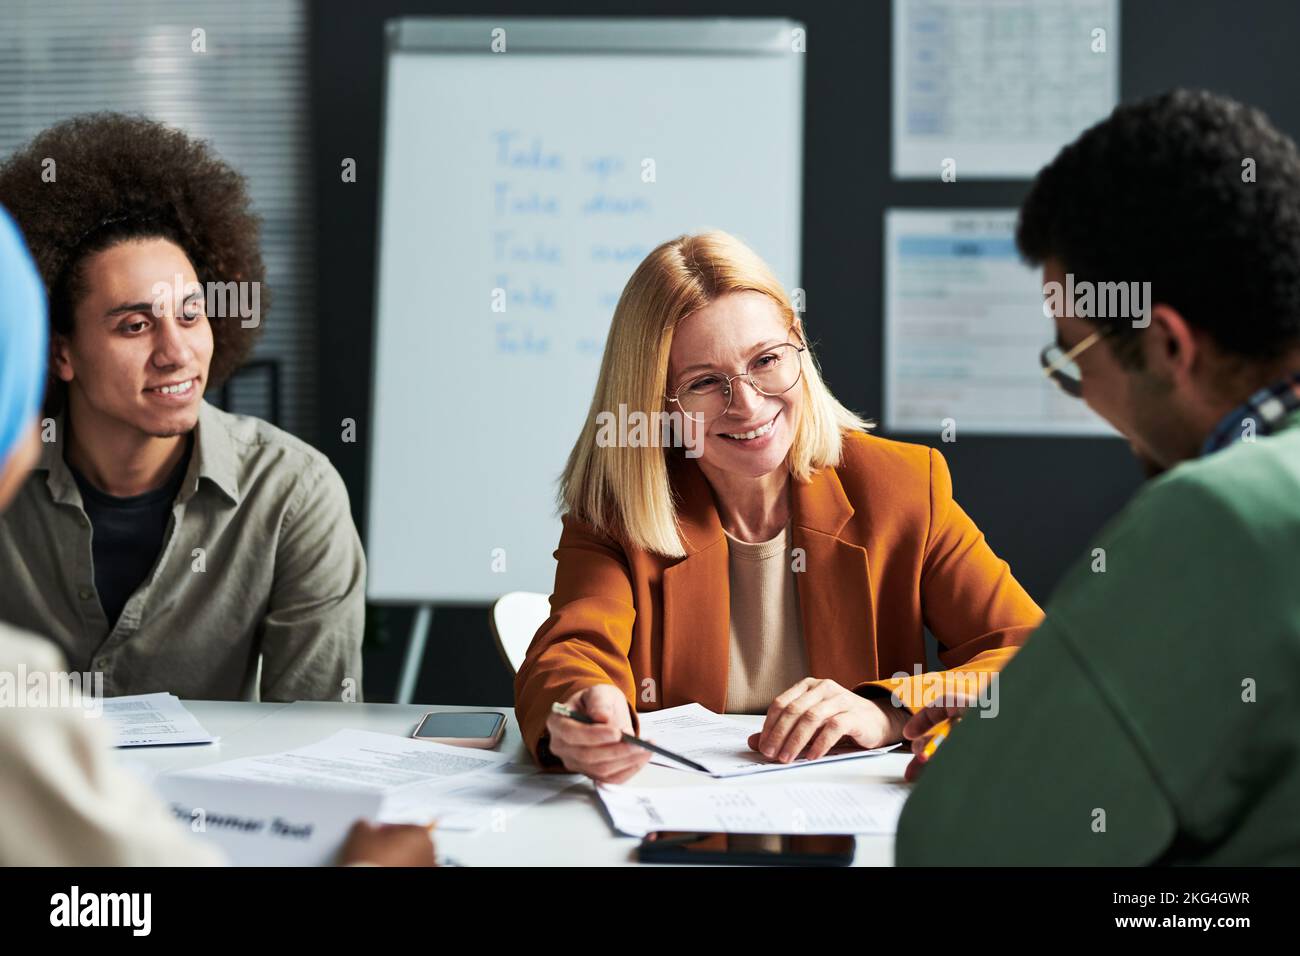 Glückliche reife blonde Linguistik-Lehrerin, die einem Schüler etwas erklärt, während sie ihn anschaut und auf ein Dokument zeigt Stockfoto